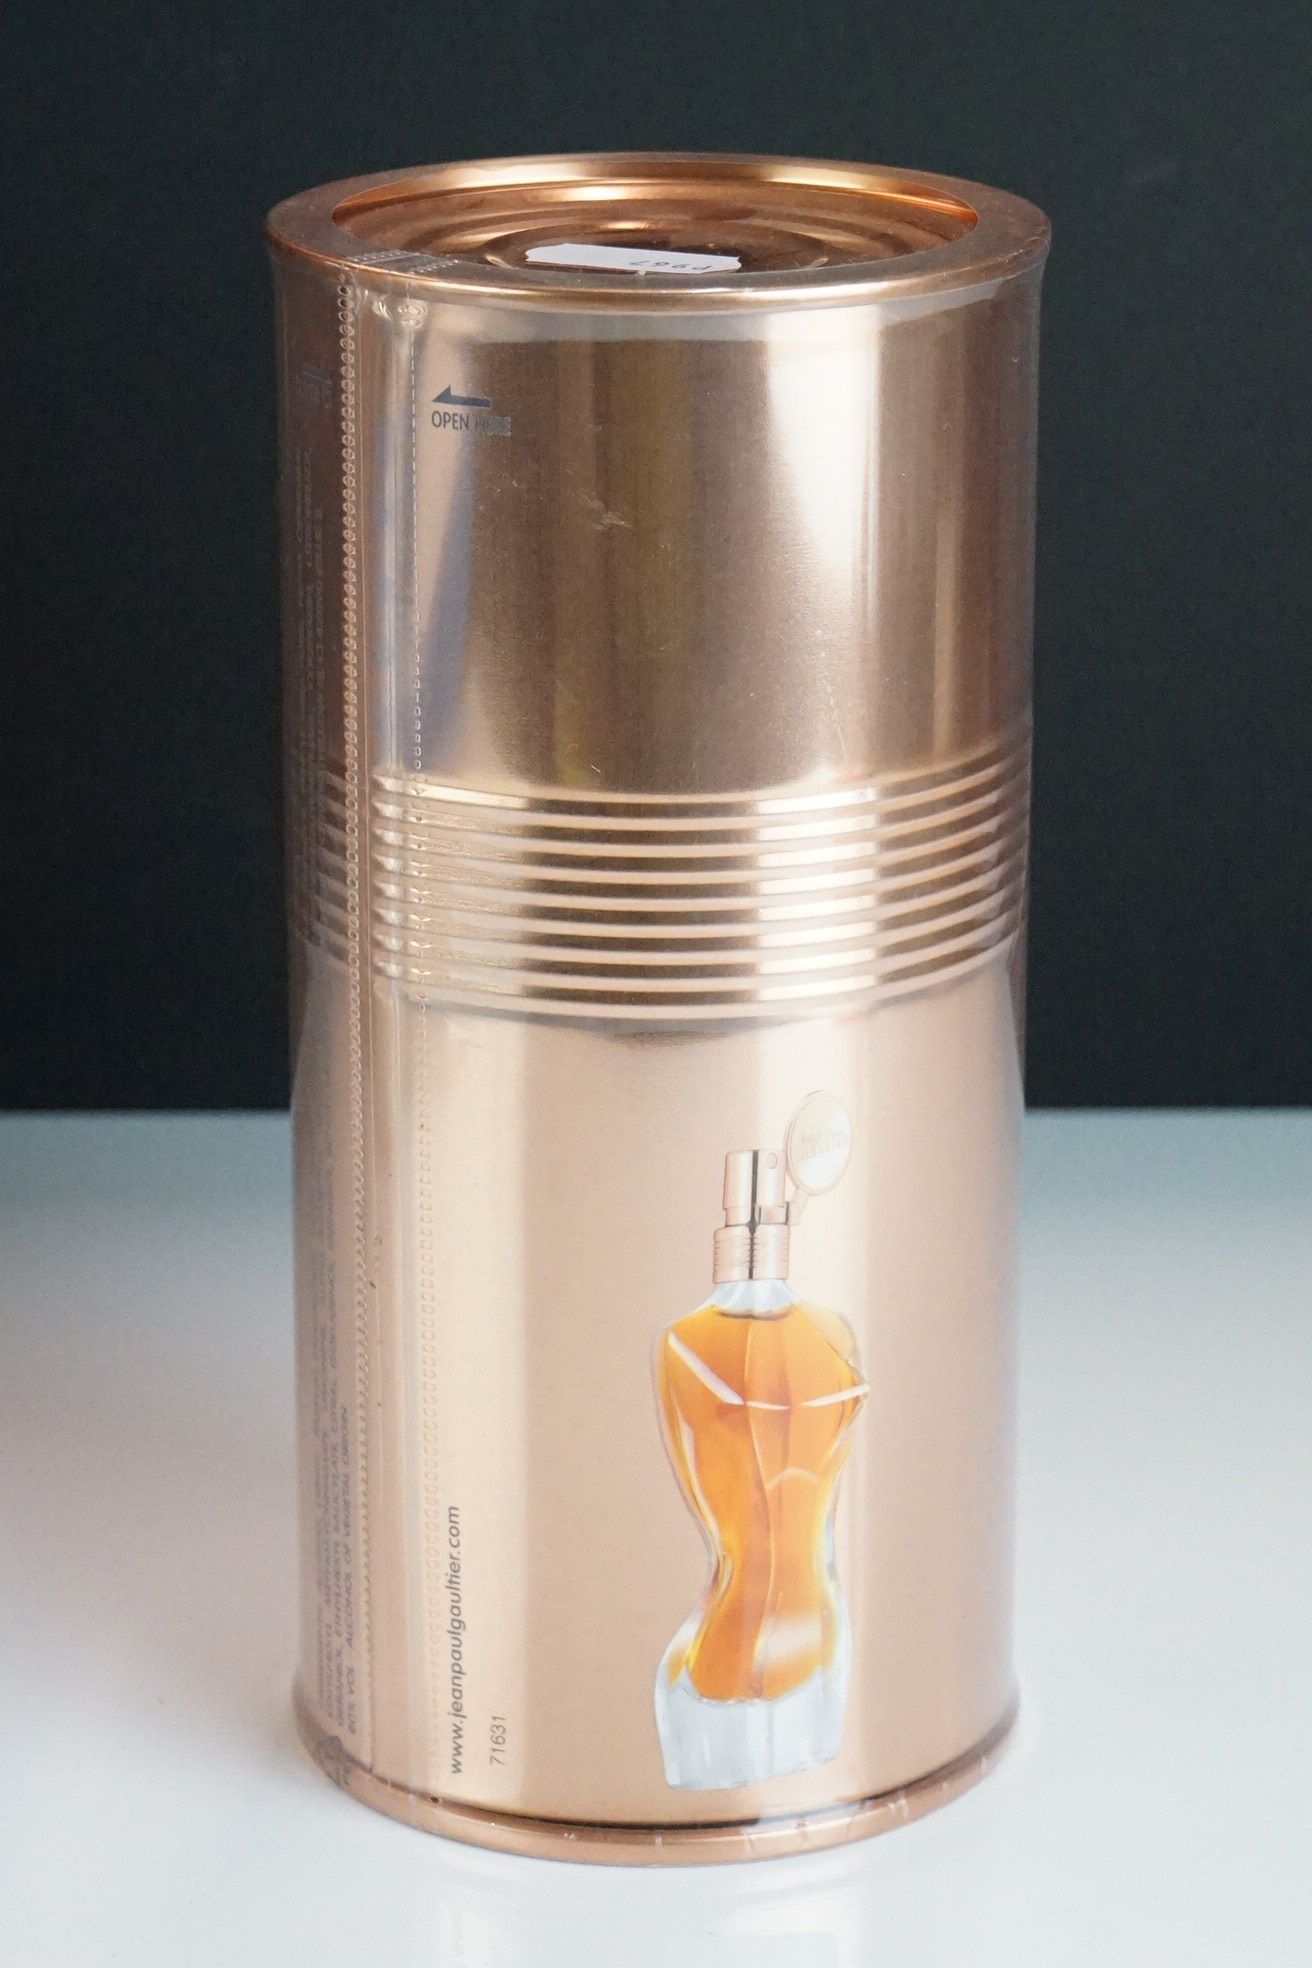 A collection of four Jean Paul Gaultier natural sprays to include Essence De Pafum, Eau De Parfum, - Image 9 of 9